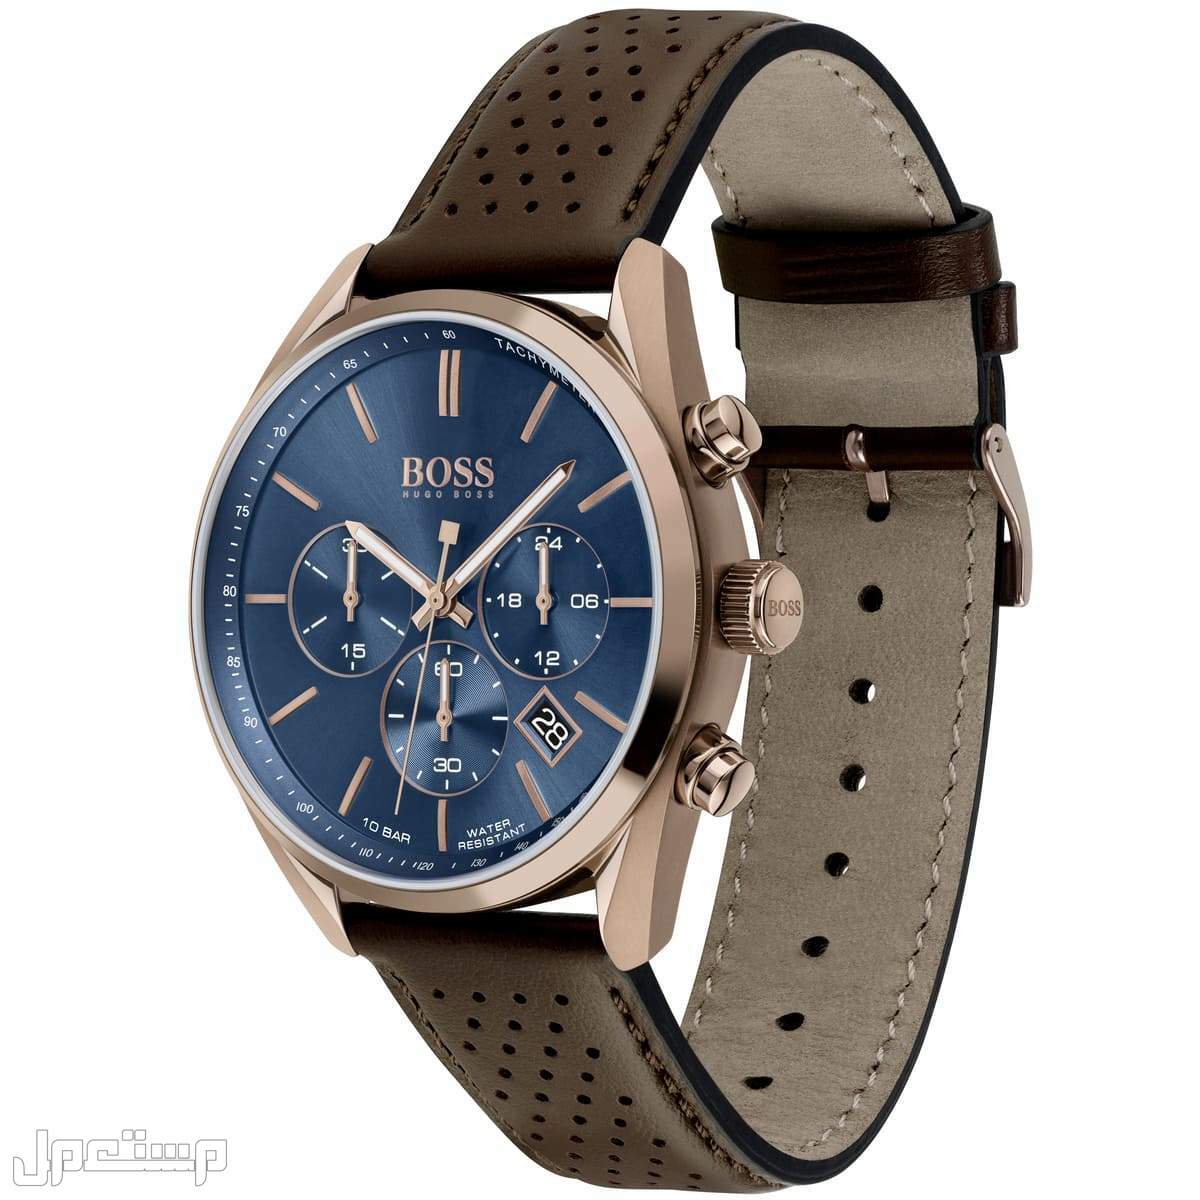 أفضل ساعات بوس Boss الأكثر مبيعا هذا العام وأسعارها في الجزائر ساع 1513817-hugo-boss-watch-men-blue-dial-leather-brown-strap-quartz-analog-chro